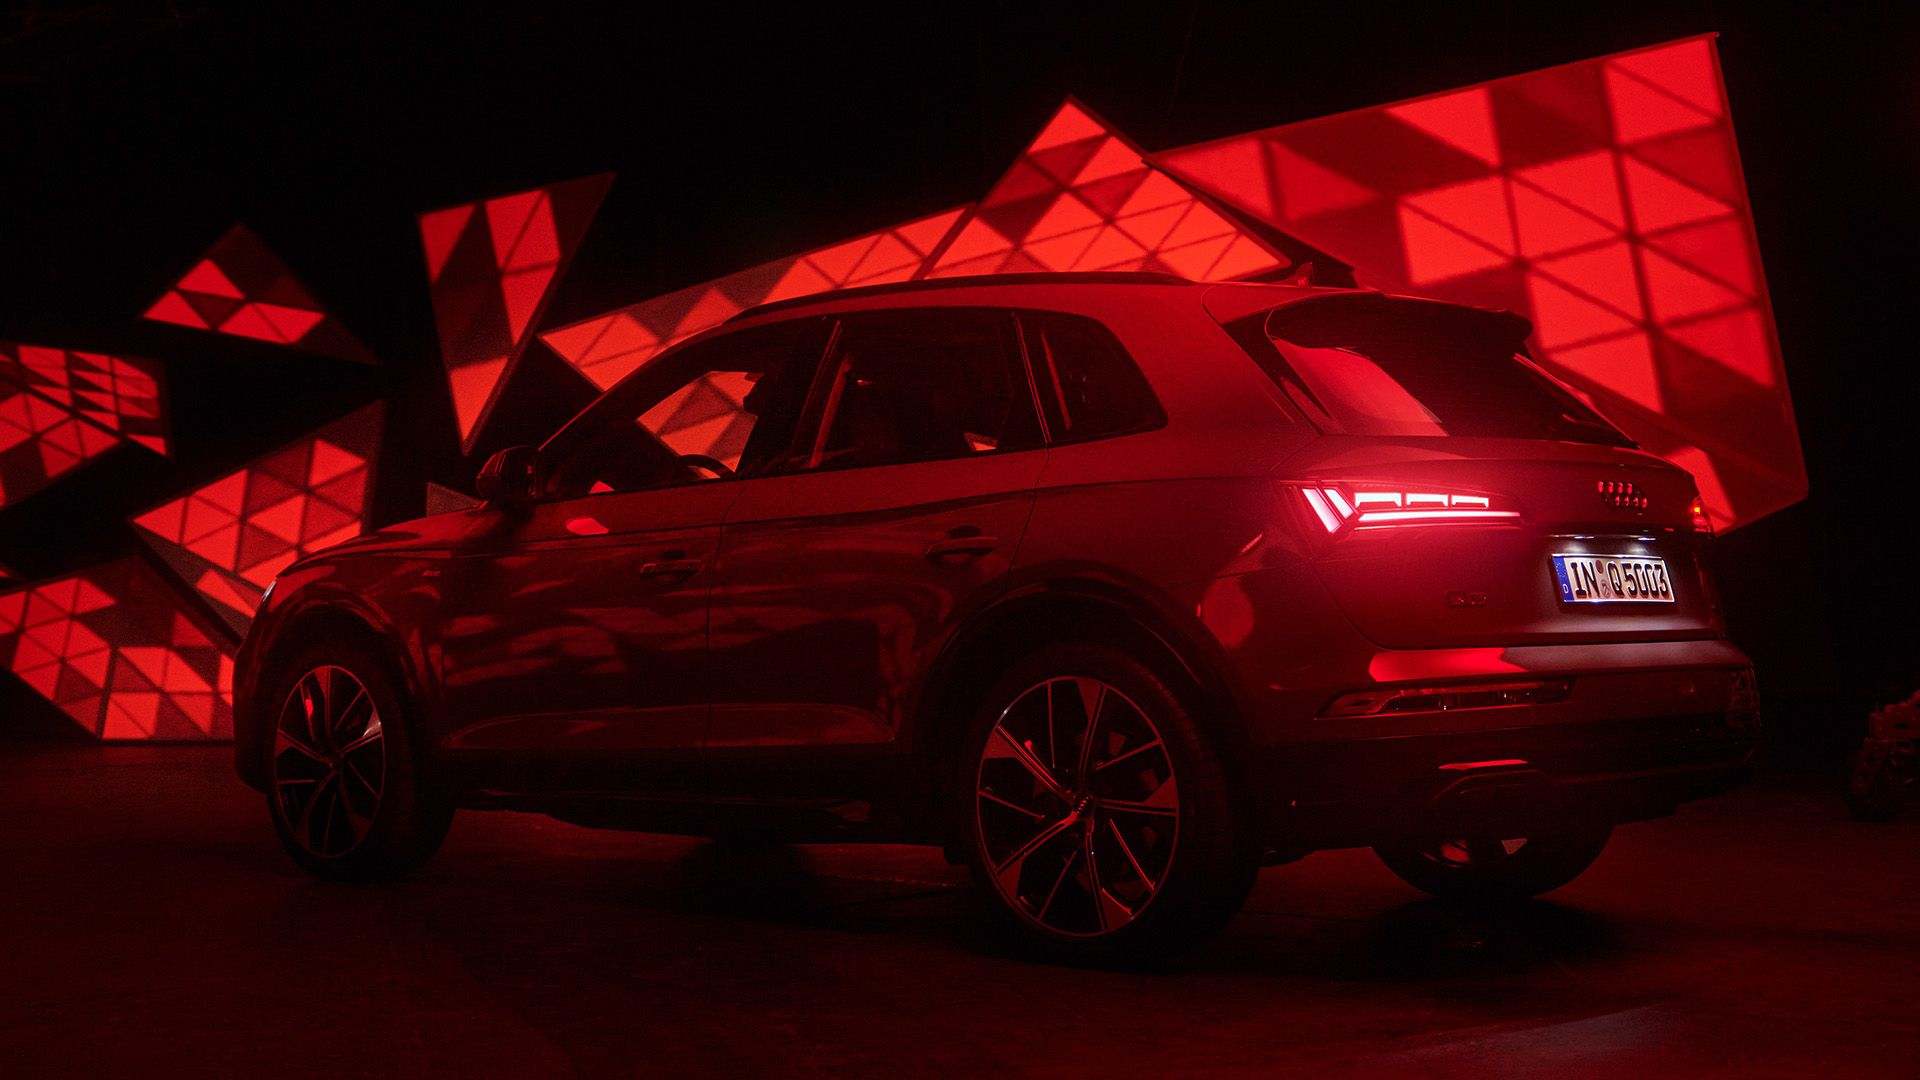 Novedad mundial en el nuevo SUV premium Audi Q5¹: las luces traseras con tecnología digital OLED² con hasta tres firmas diferentes entre las que elegir.